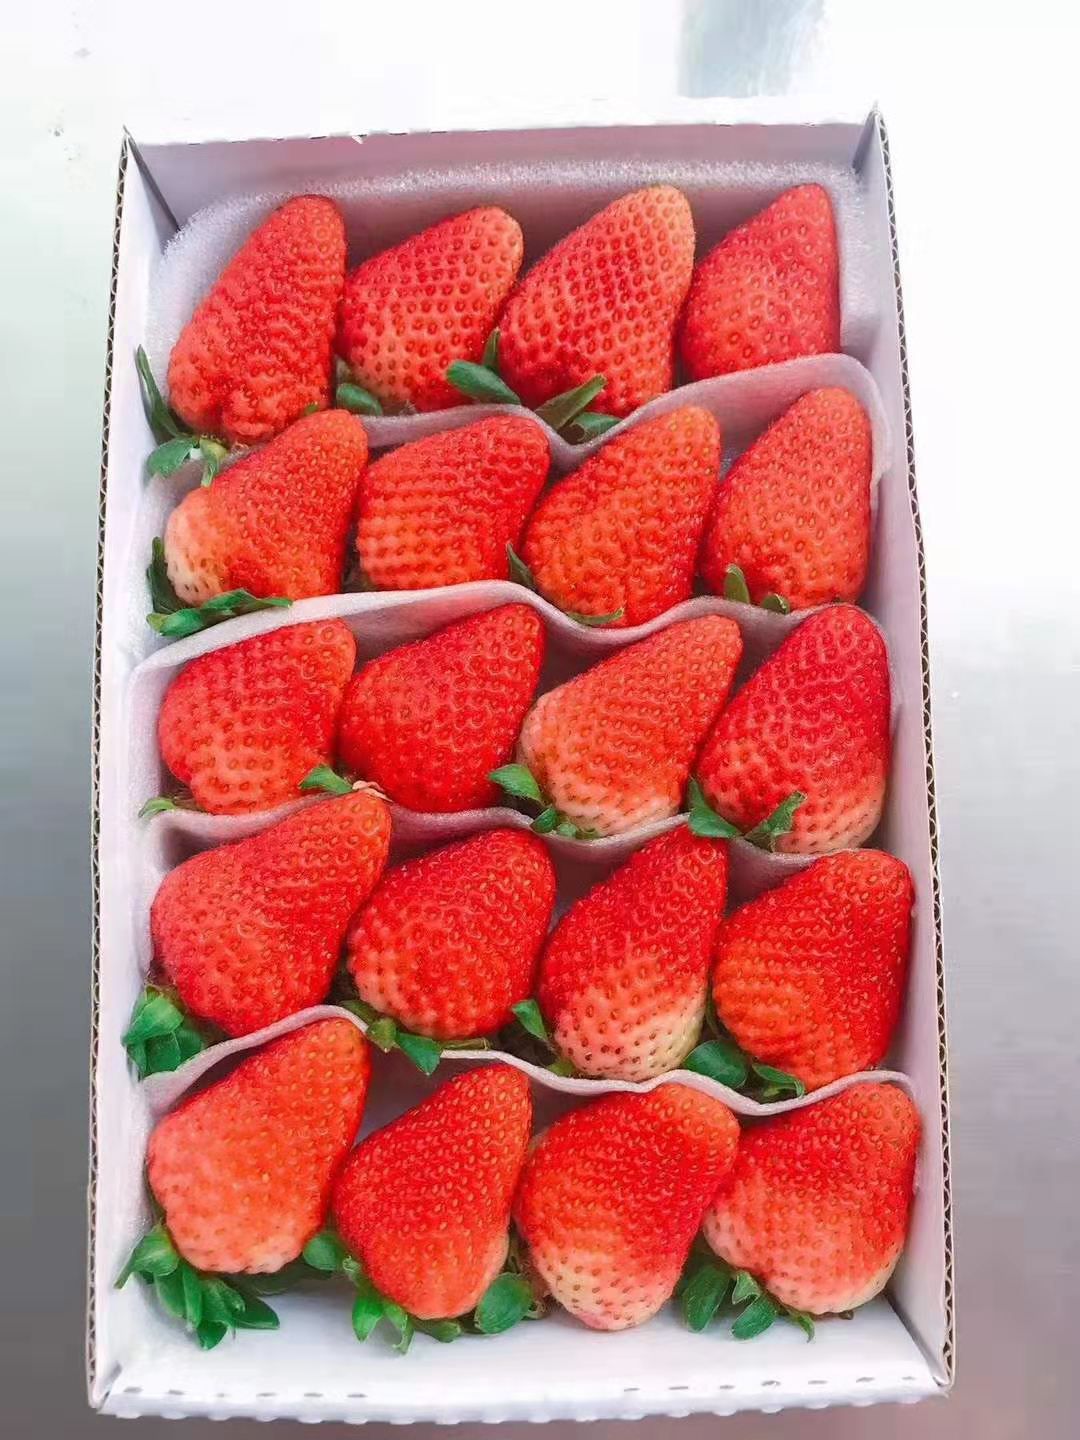 德昌草莓 自产露天草莓